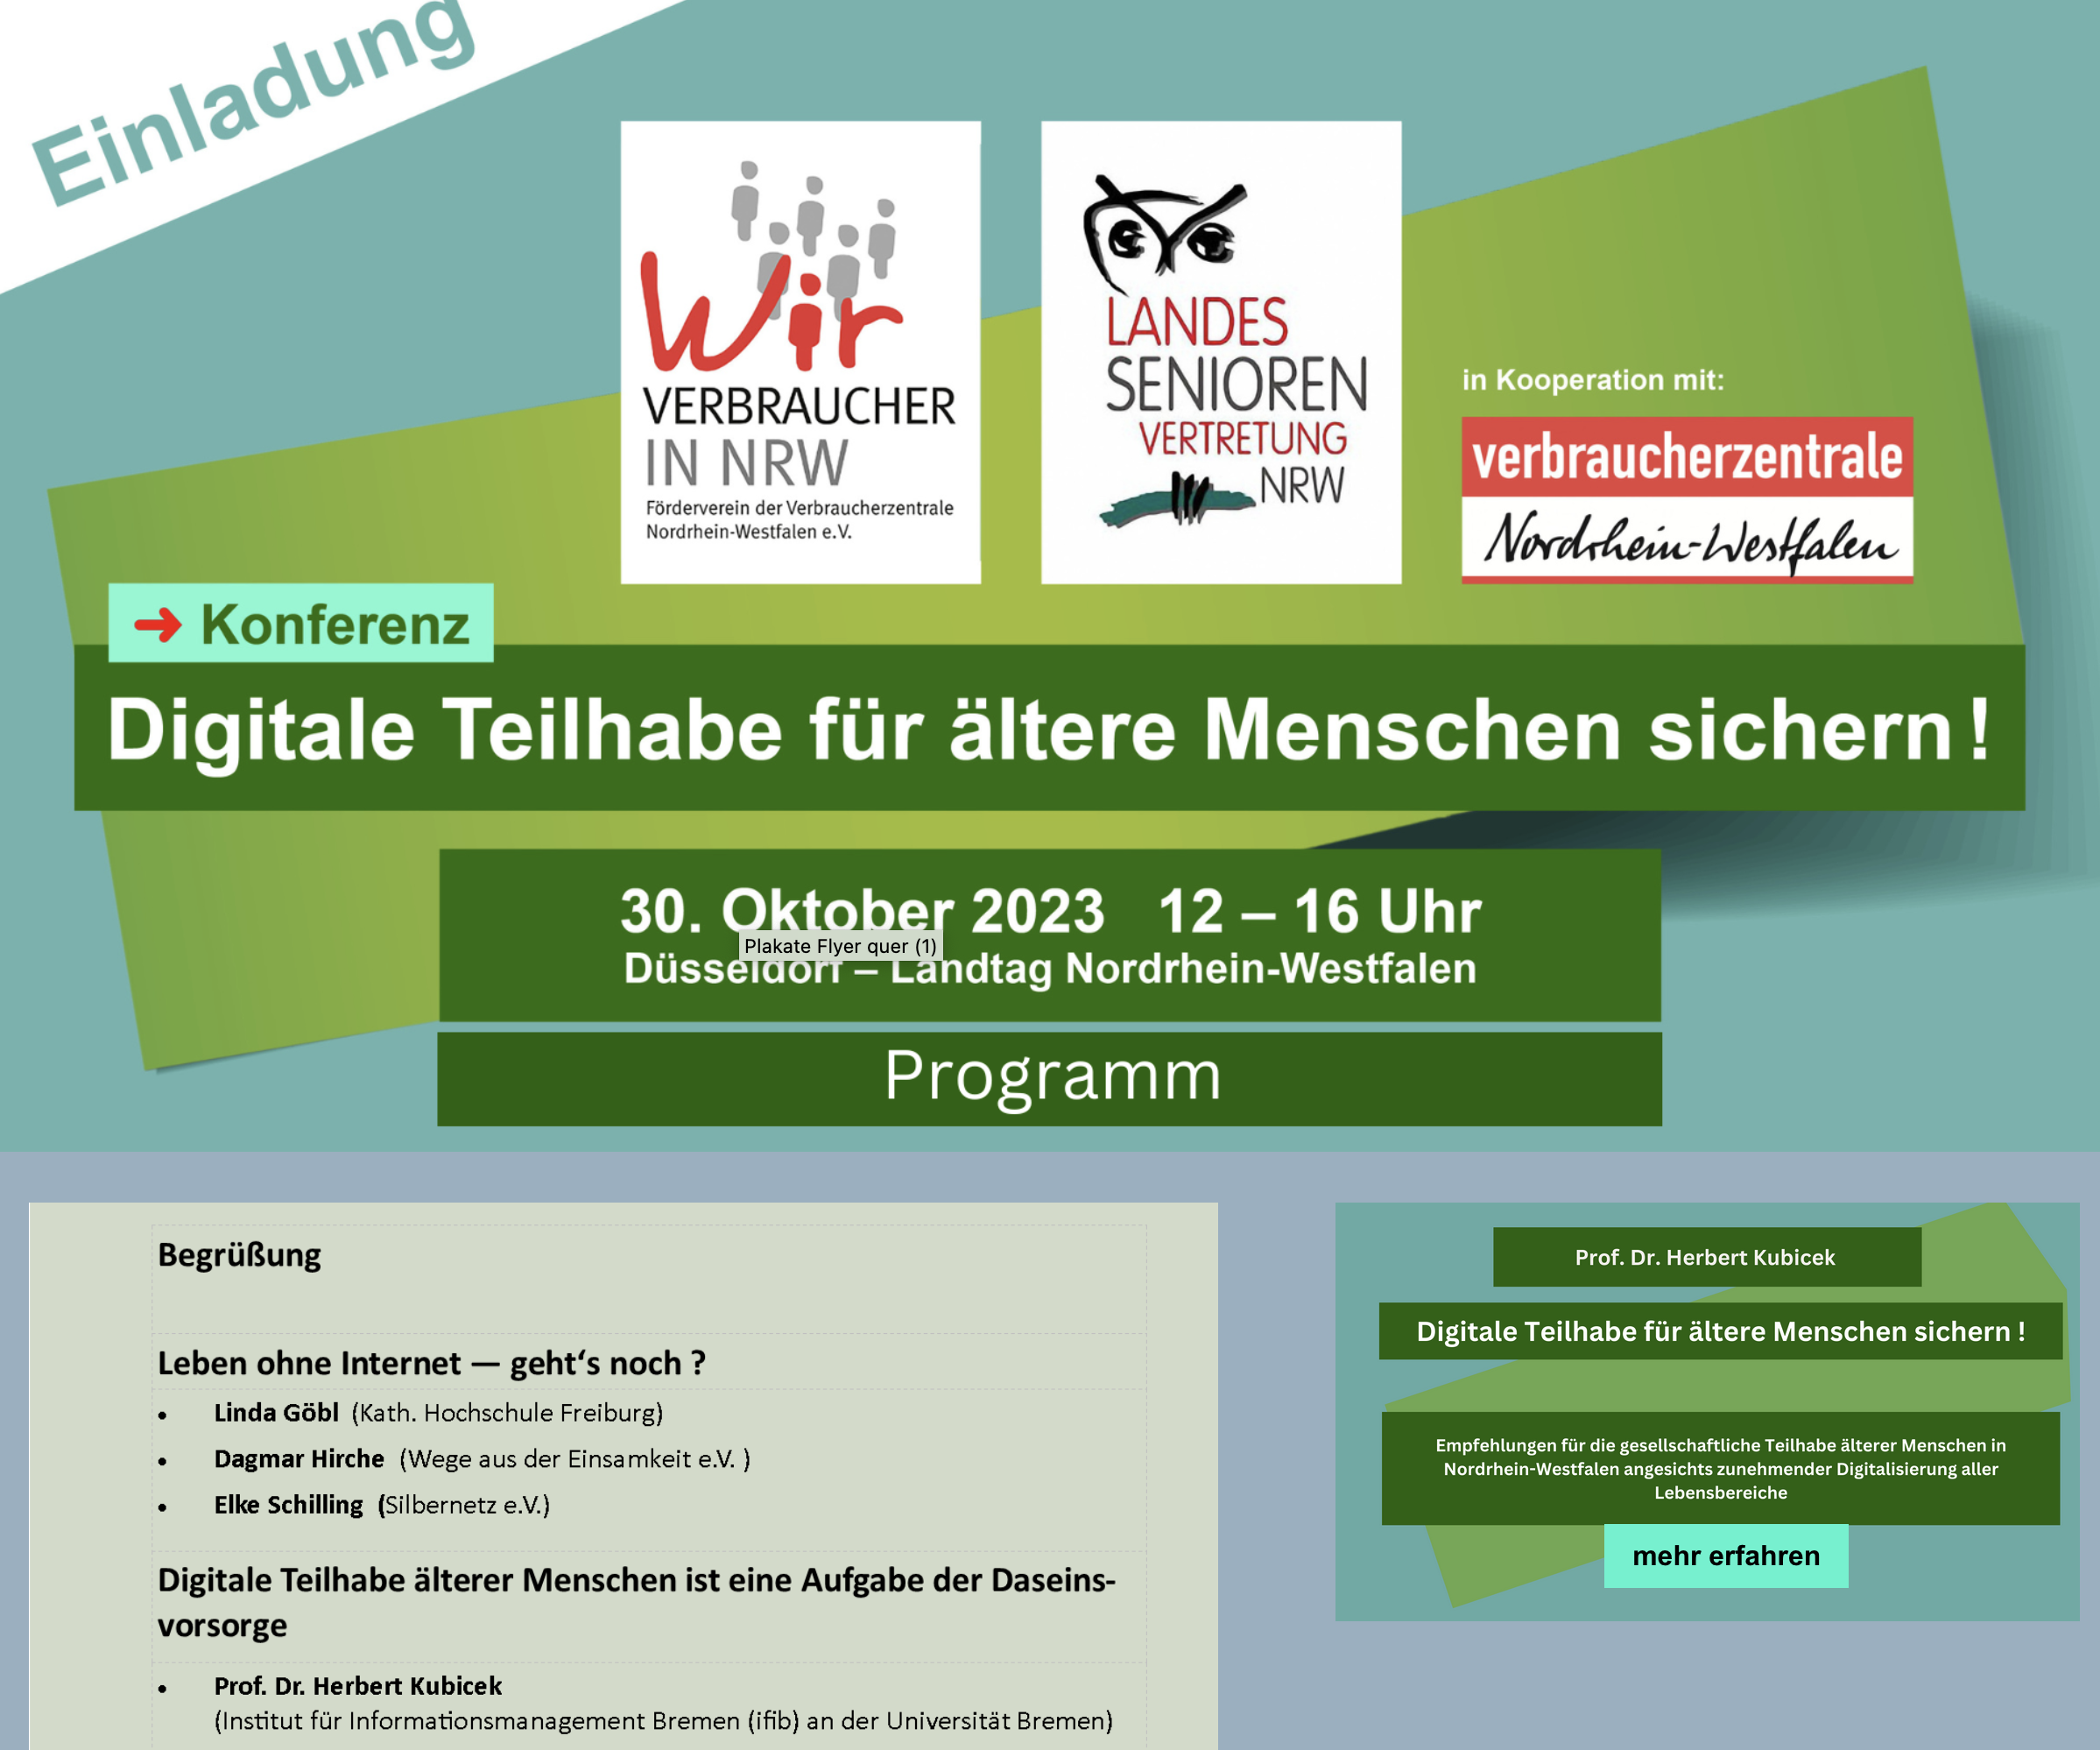 Screenshot von der Internetseite zu der Veranstaltung am 30. Oktober 2023 im Düsseldorfer Landtag mit dem Link zum Download der Expertise